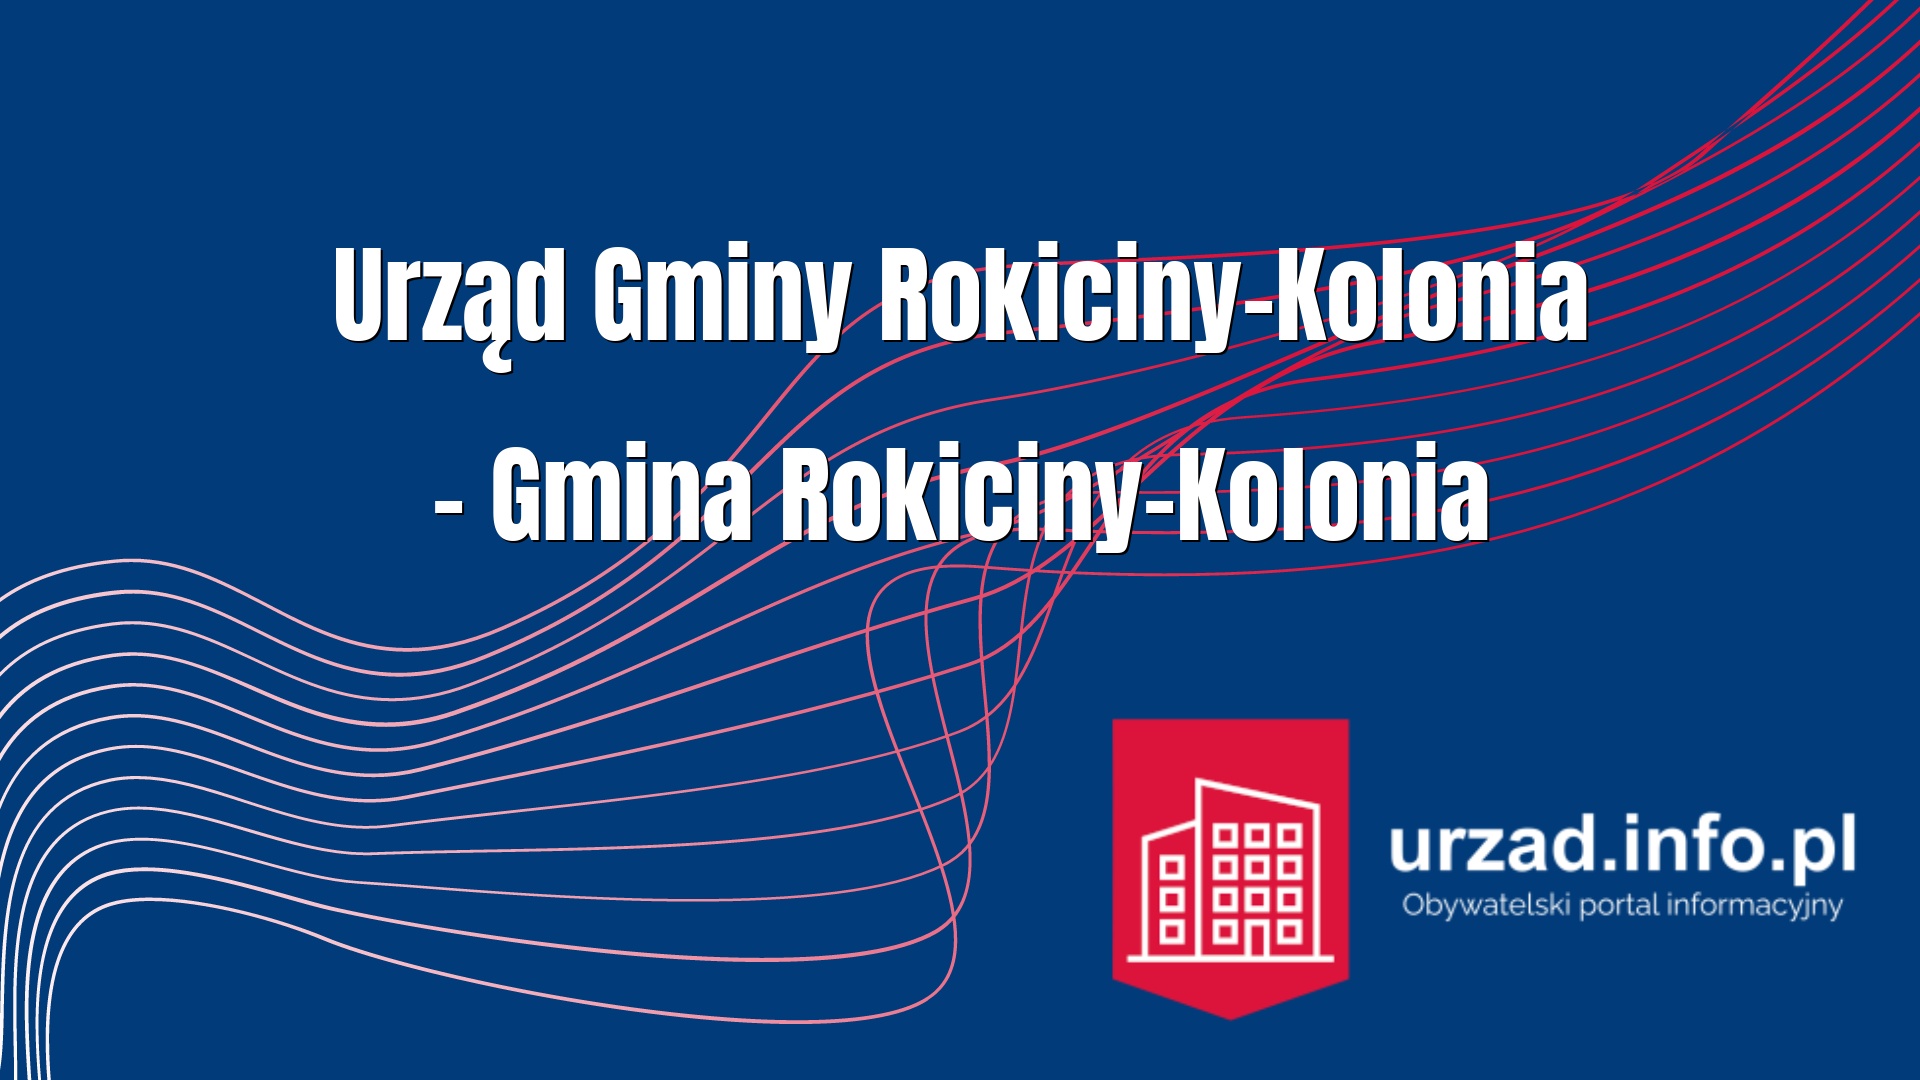 Urząd Gminy Rokiciny-Kolonia – Gmina Rokiciny-Kolonia